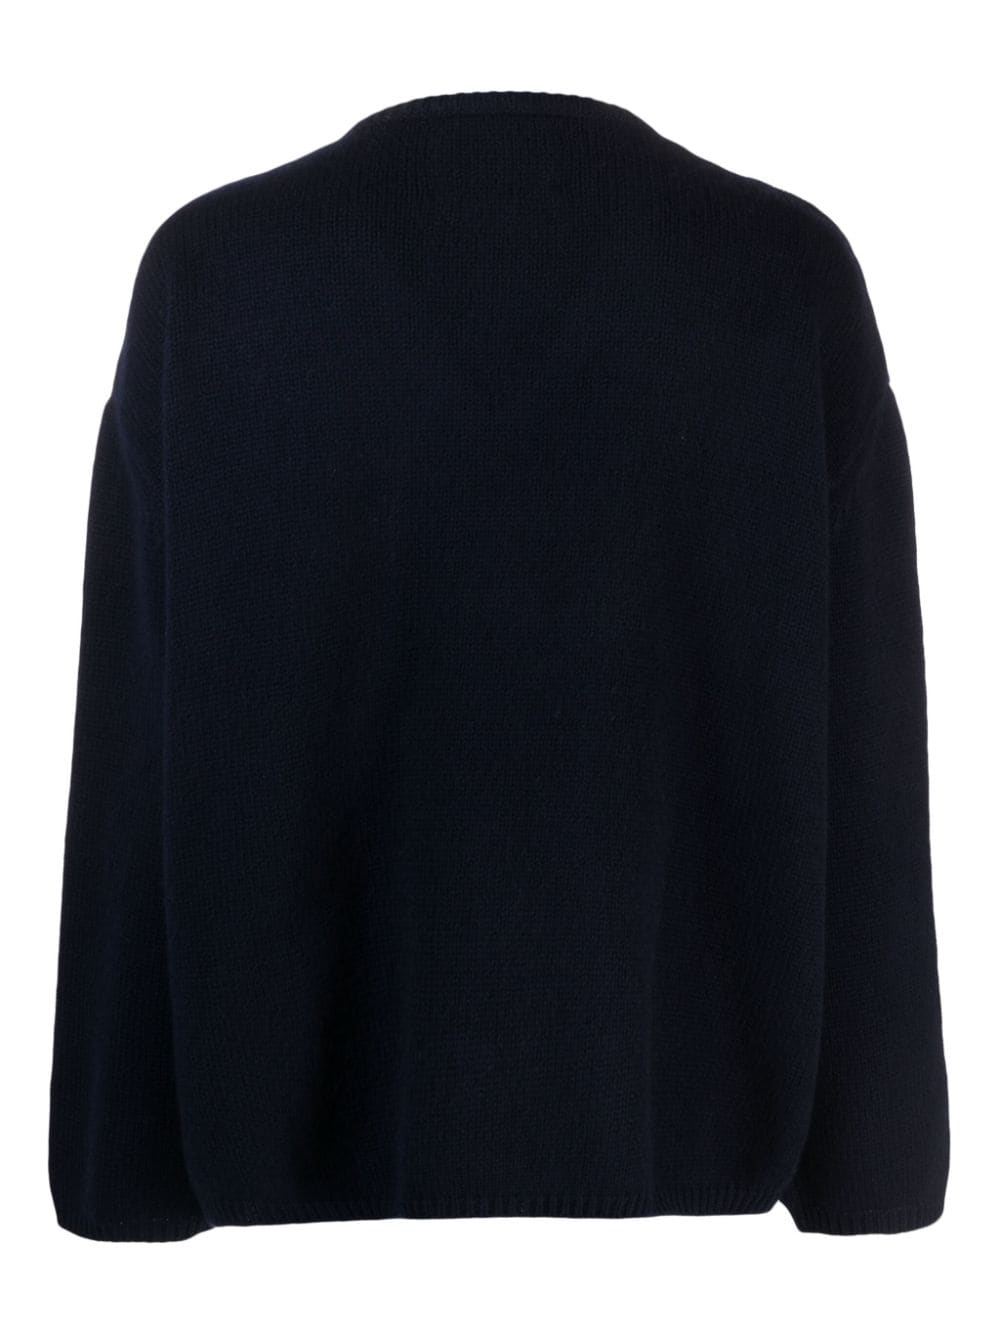 Image 2 of Lisa Yang Mona cashmere jumper